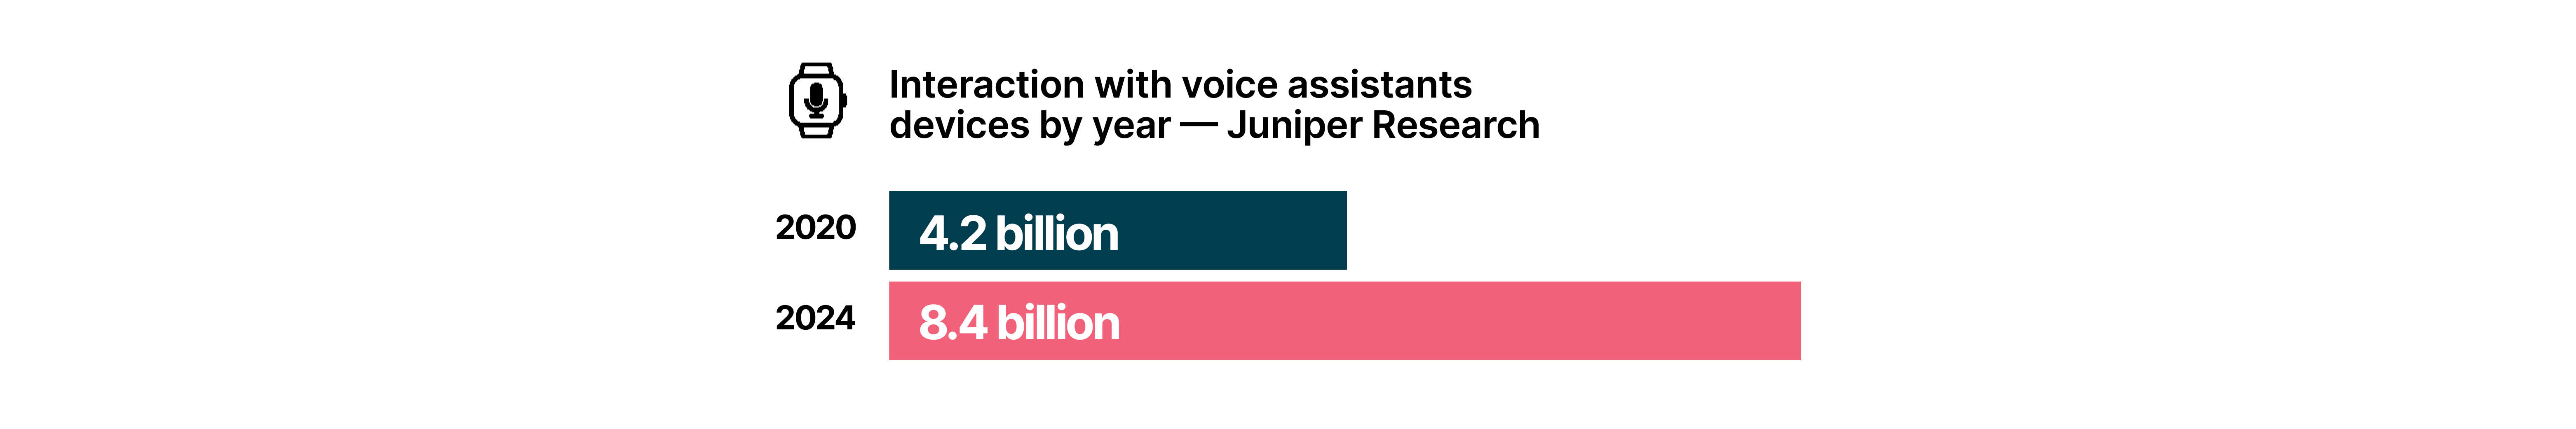 Interacción con dispositivos de asistencia de voz por año